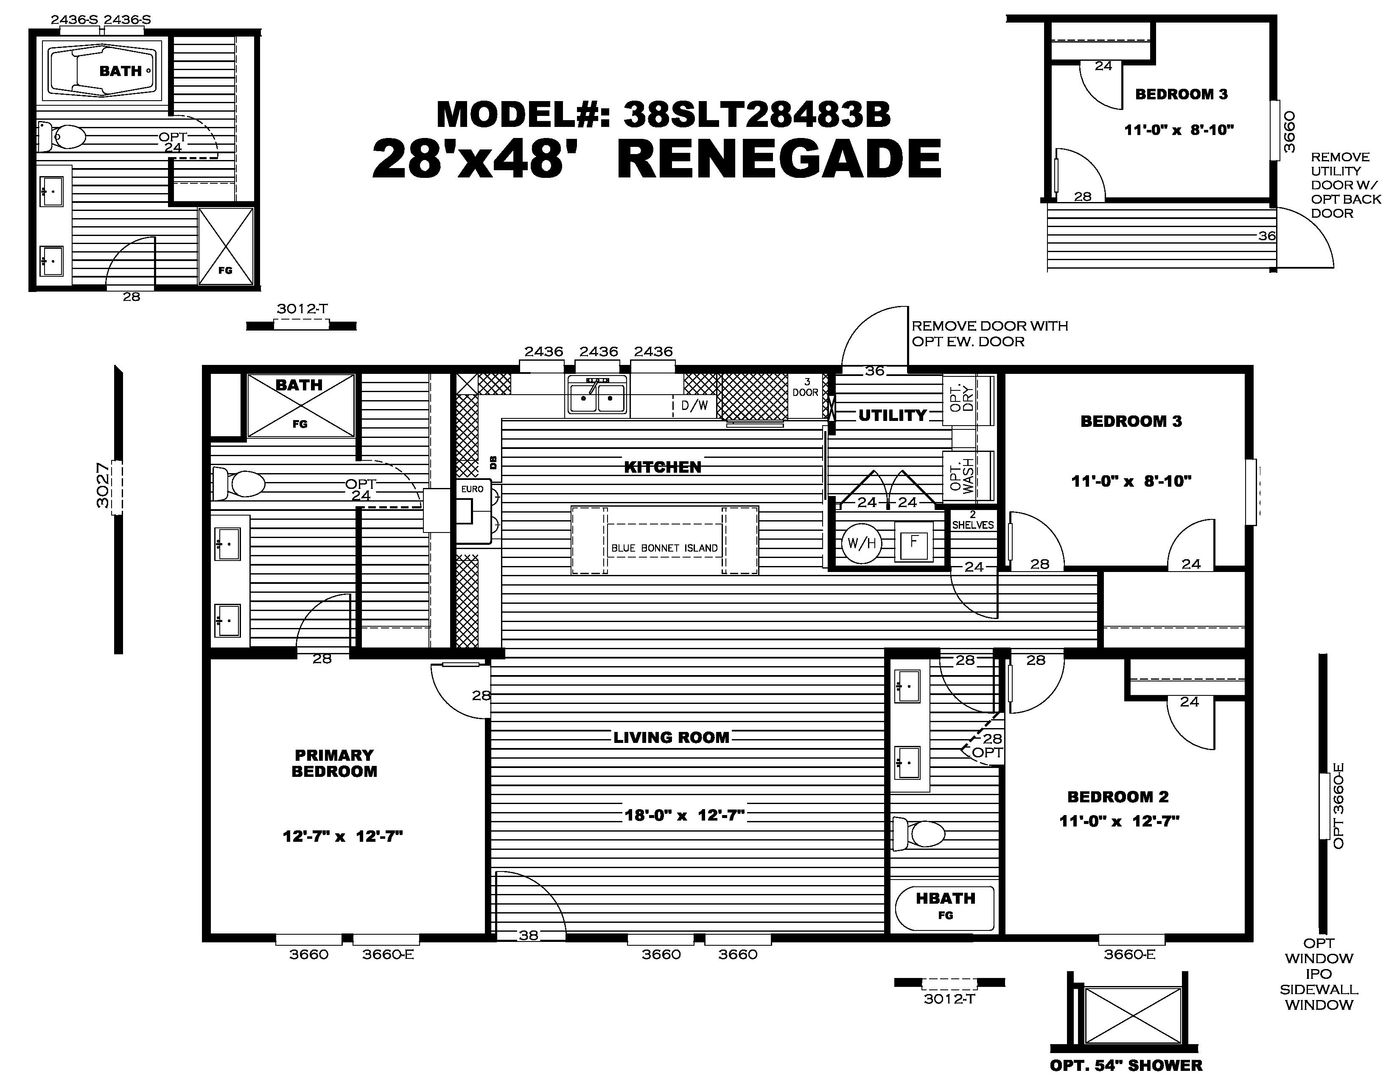 The Renegade Floor Plan